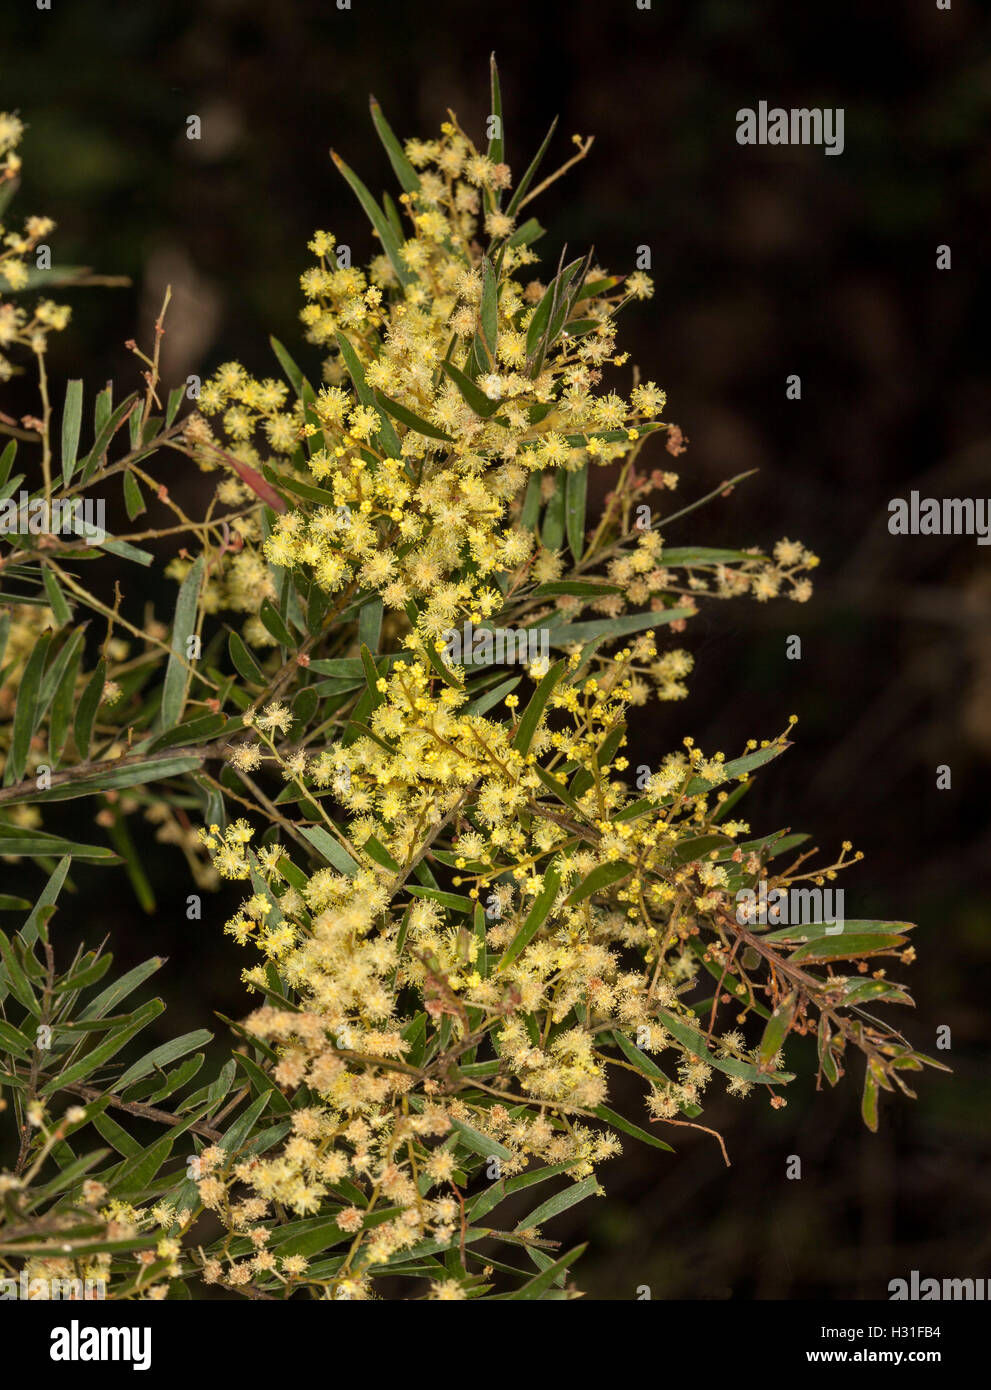 Grappolo di fiori gialli & belle foglie verdi di Acacia fimbriata, Brisbane bargiglio, nativi Australiani, contro uno sfondo scuro Foto Stock